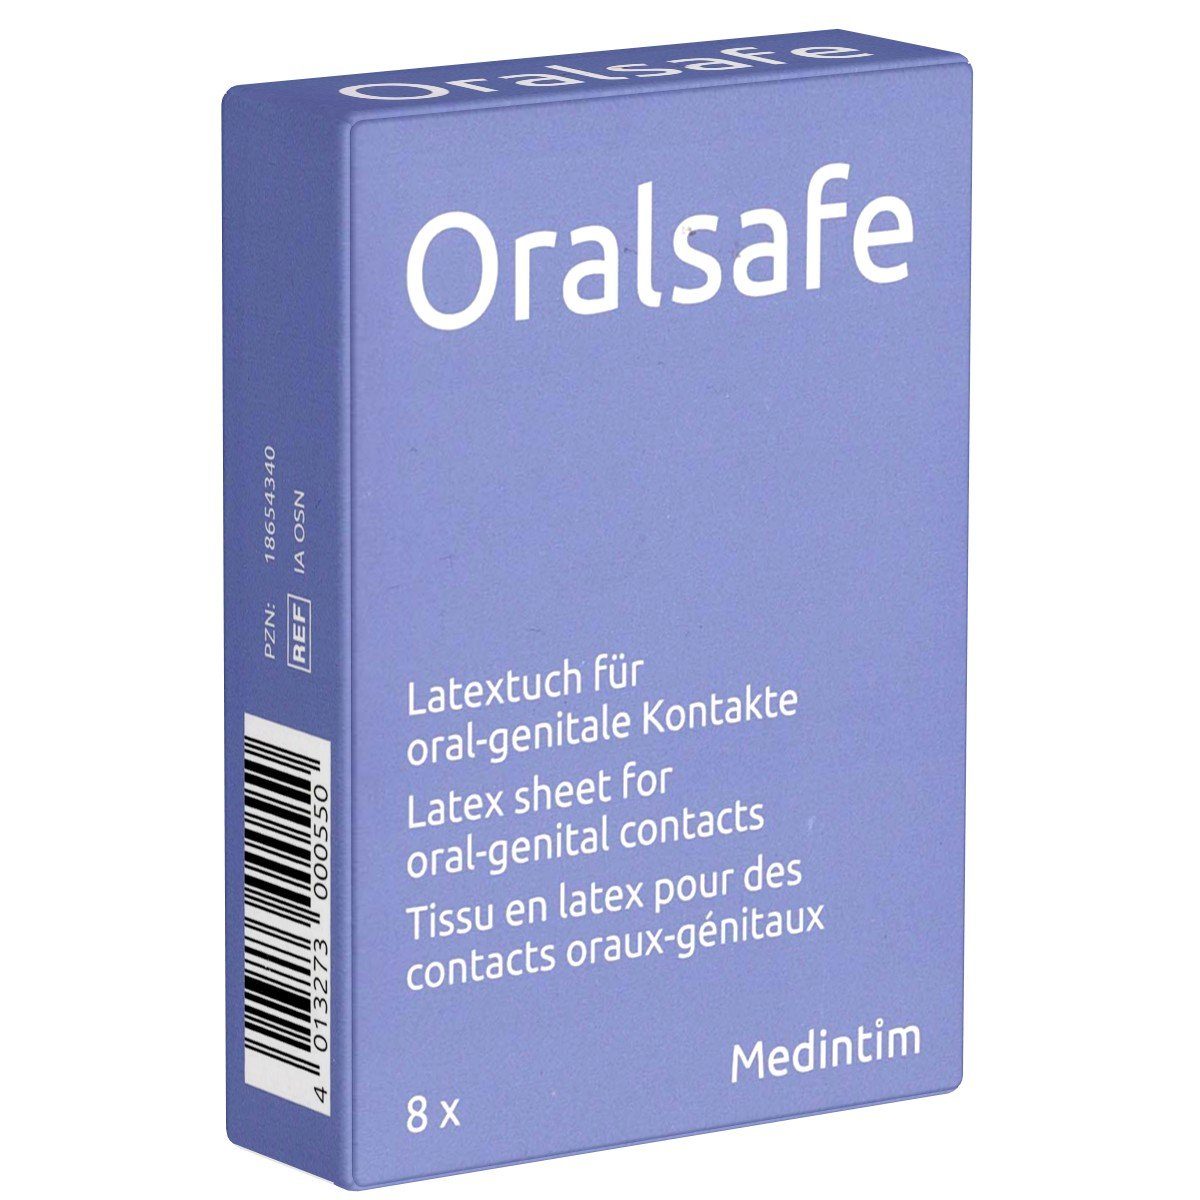 Medintim Kondome MedIntim «Oral Safe» Latexschutztücher mit Aroma, Packung mit 8 Stück Variante: Neutral, Latexschutztücher, Lecktücher (Dams) ohne Aroma